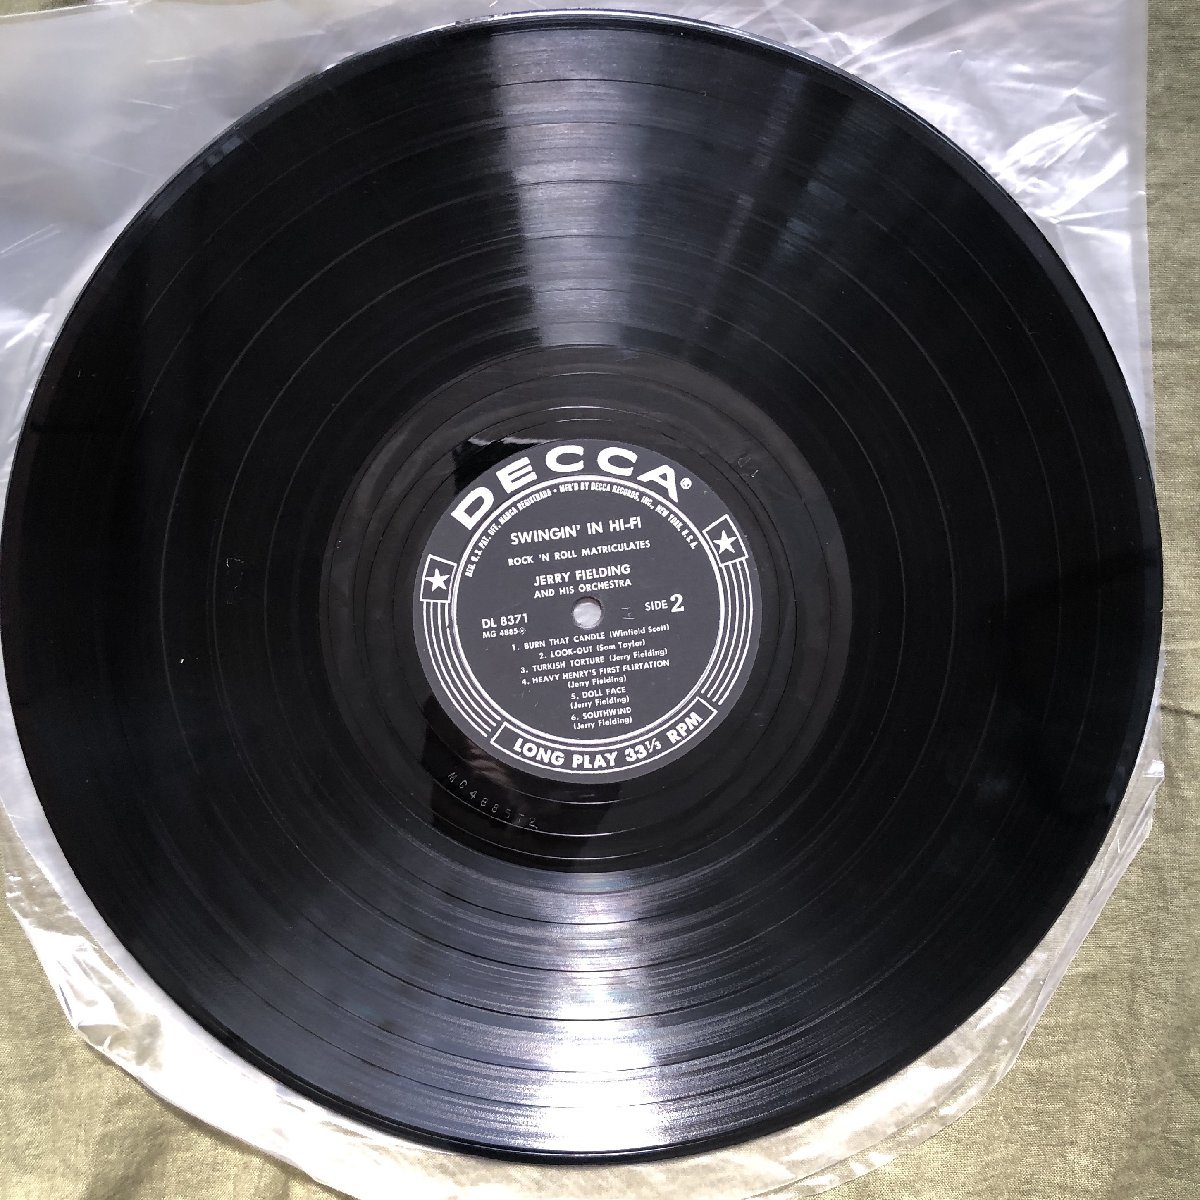 原信夫Collection 良盤 激レア 1956年 米国本国オリジナルリリース盤 Jerry Fielding LPレコード Swingin' In Hi-Fi: George Red Callender_画像9